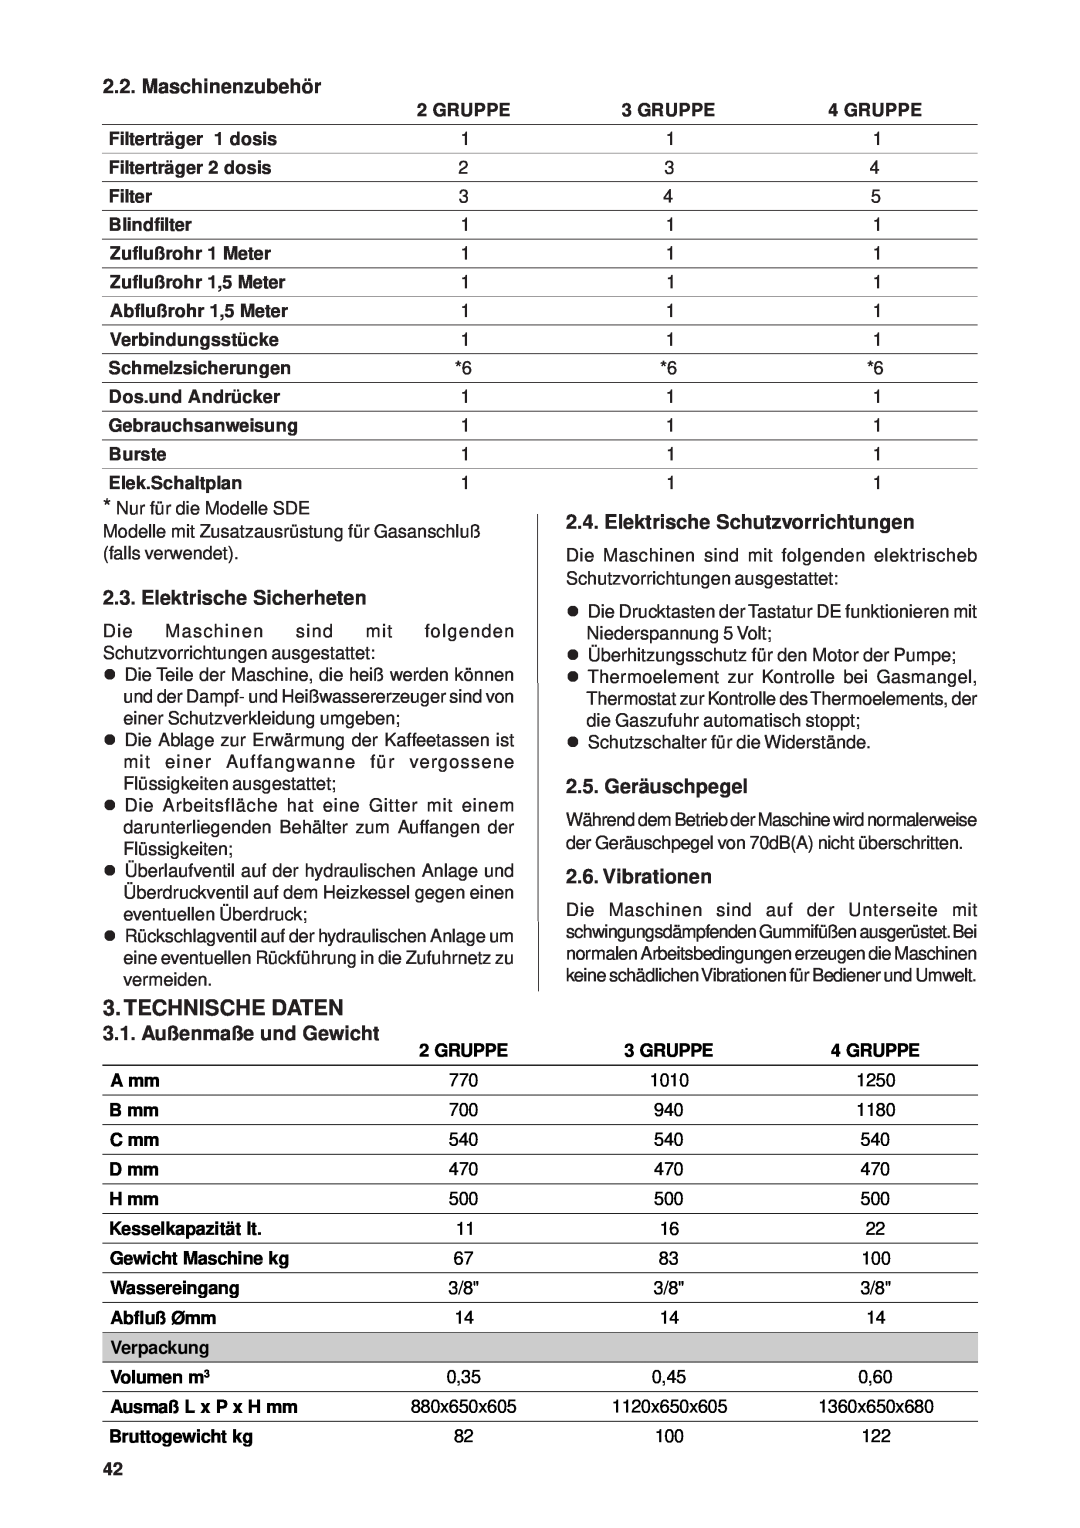 Rancilio Millennium manual Technische Daten, Maschinenzubehör, Elektrische Sicherheten, Elektrische Schutzvorrichtungen 